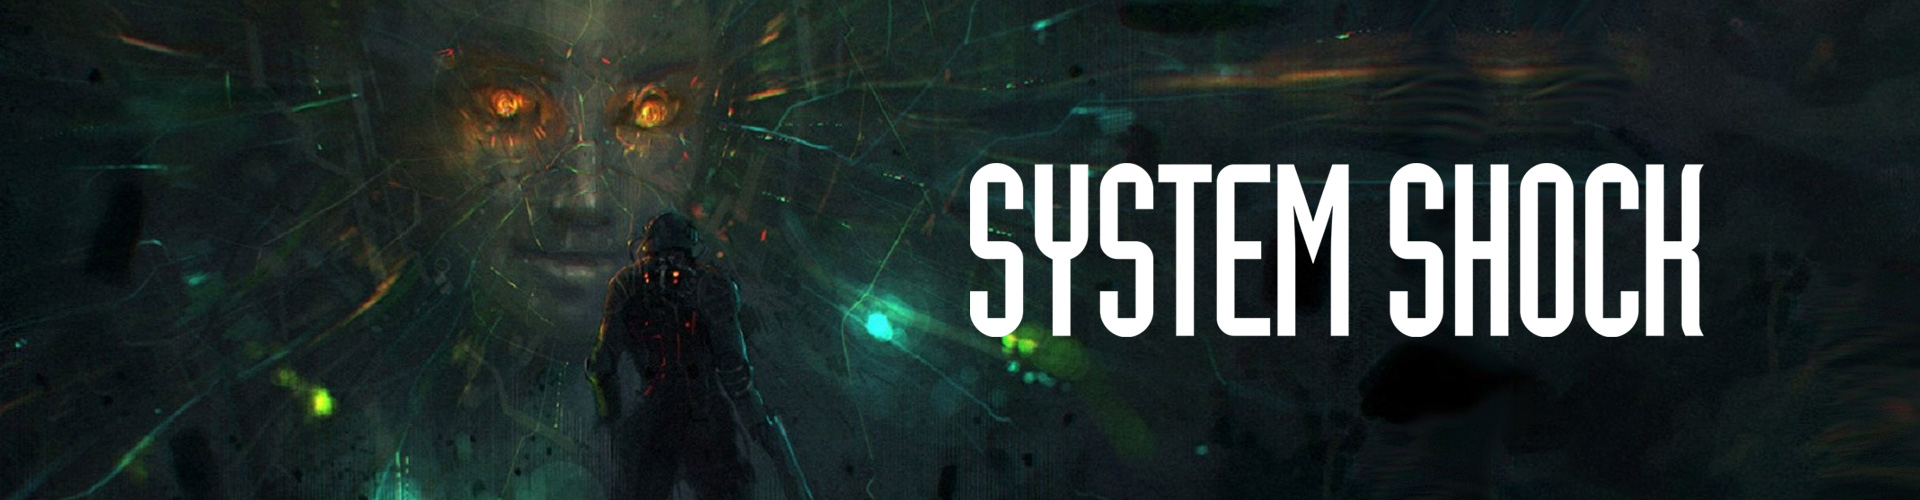 System Shock Ã© um FPS de ficÃ§Ã£o cientÃ­fica e terror